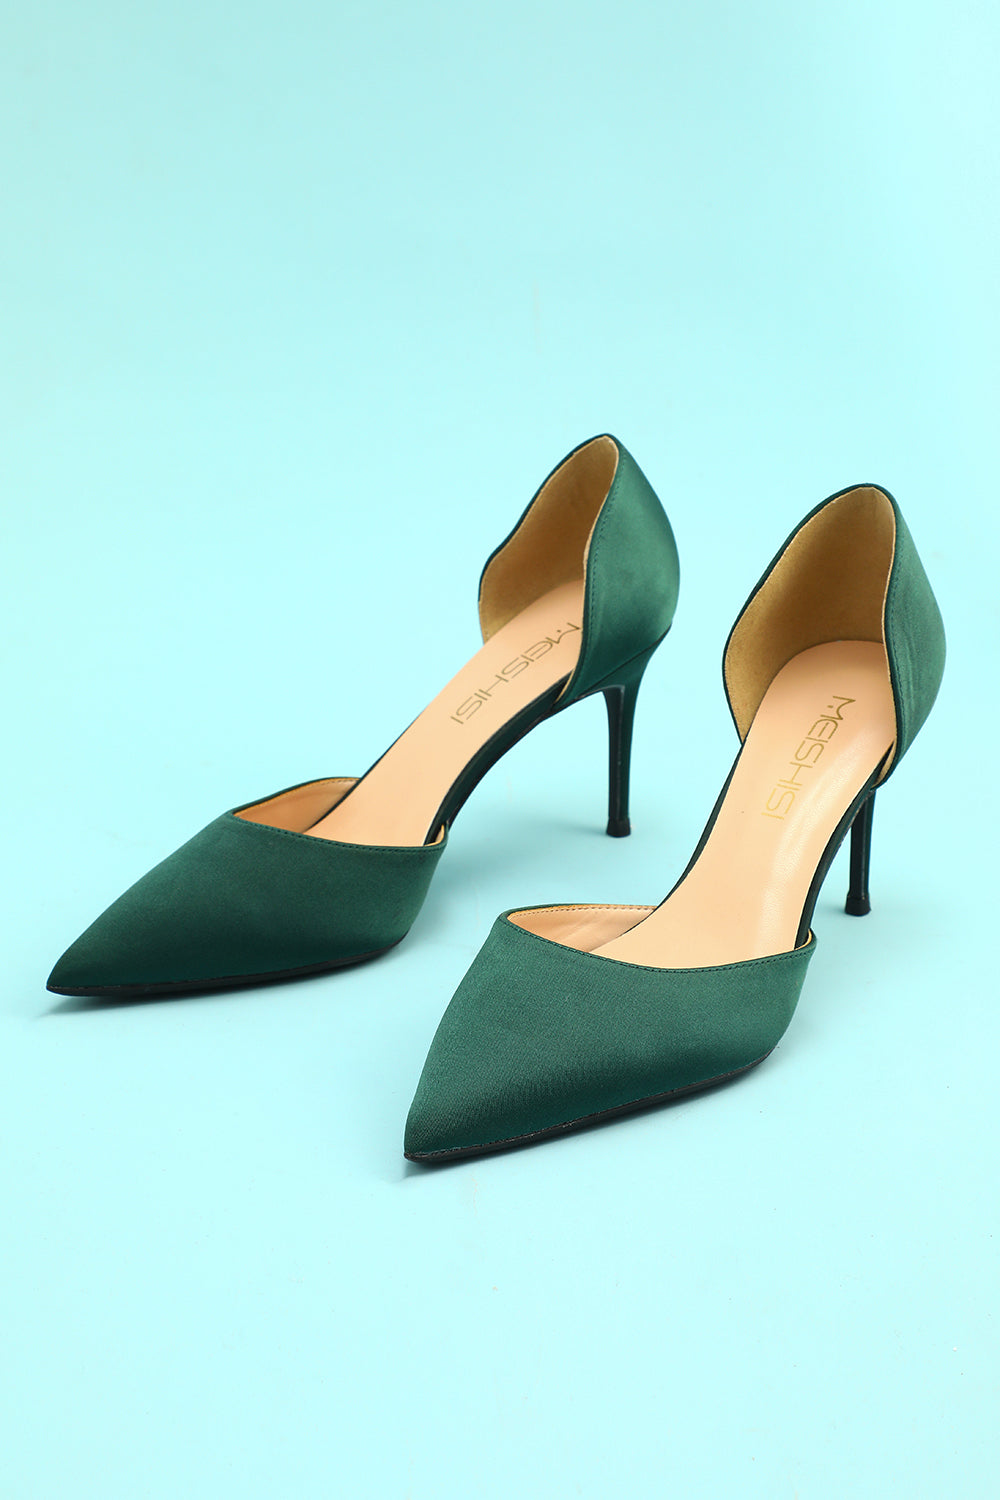 Light Green Heels Shoes, Green Stilettos Shoes, Green Pumps Size 10